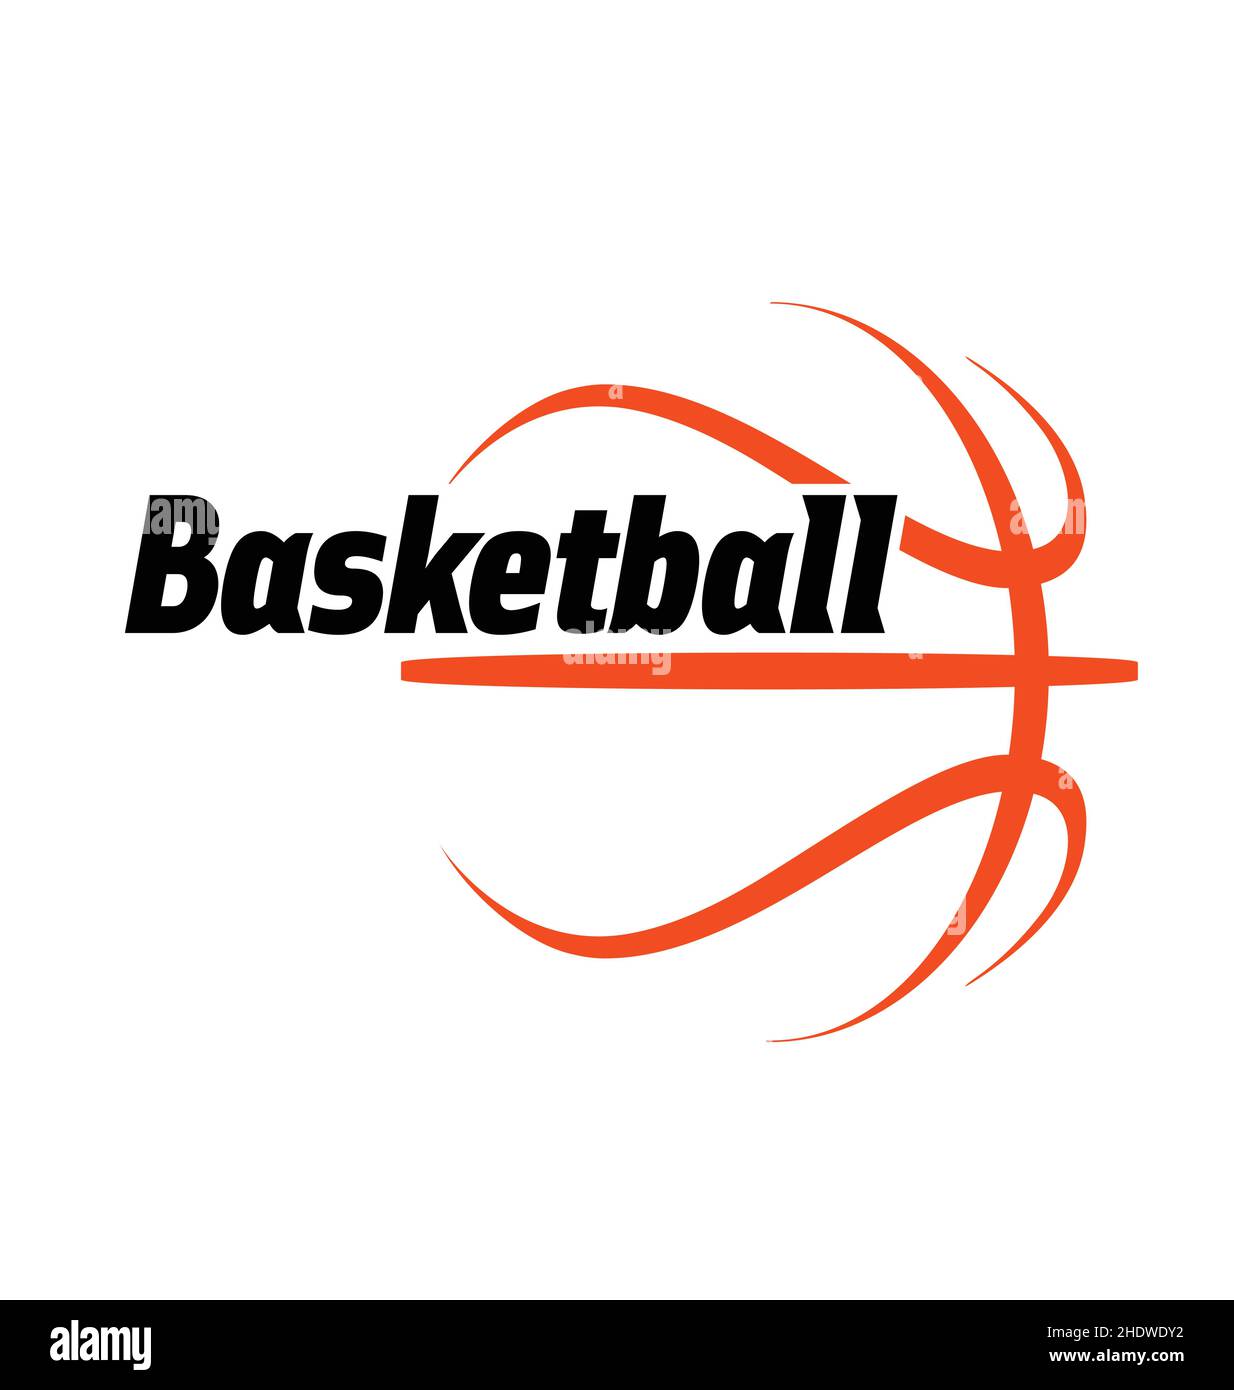 logo basket-ball dessin simple ligne orange avec texte noir vectoriel isolé sur fond blanc Illustration de Vecteur